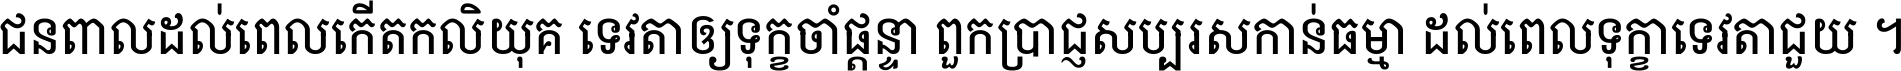 Noto Serif Khmer Condensed Medium